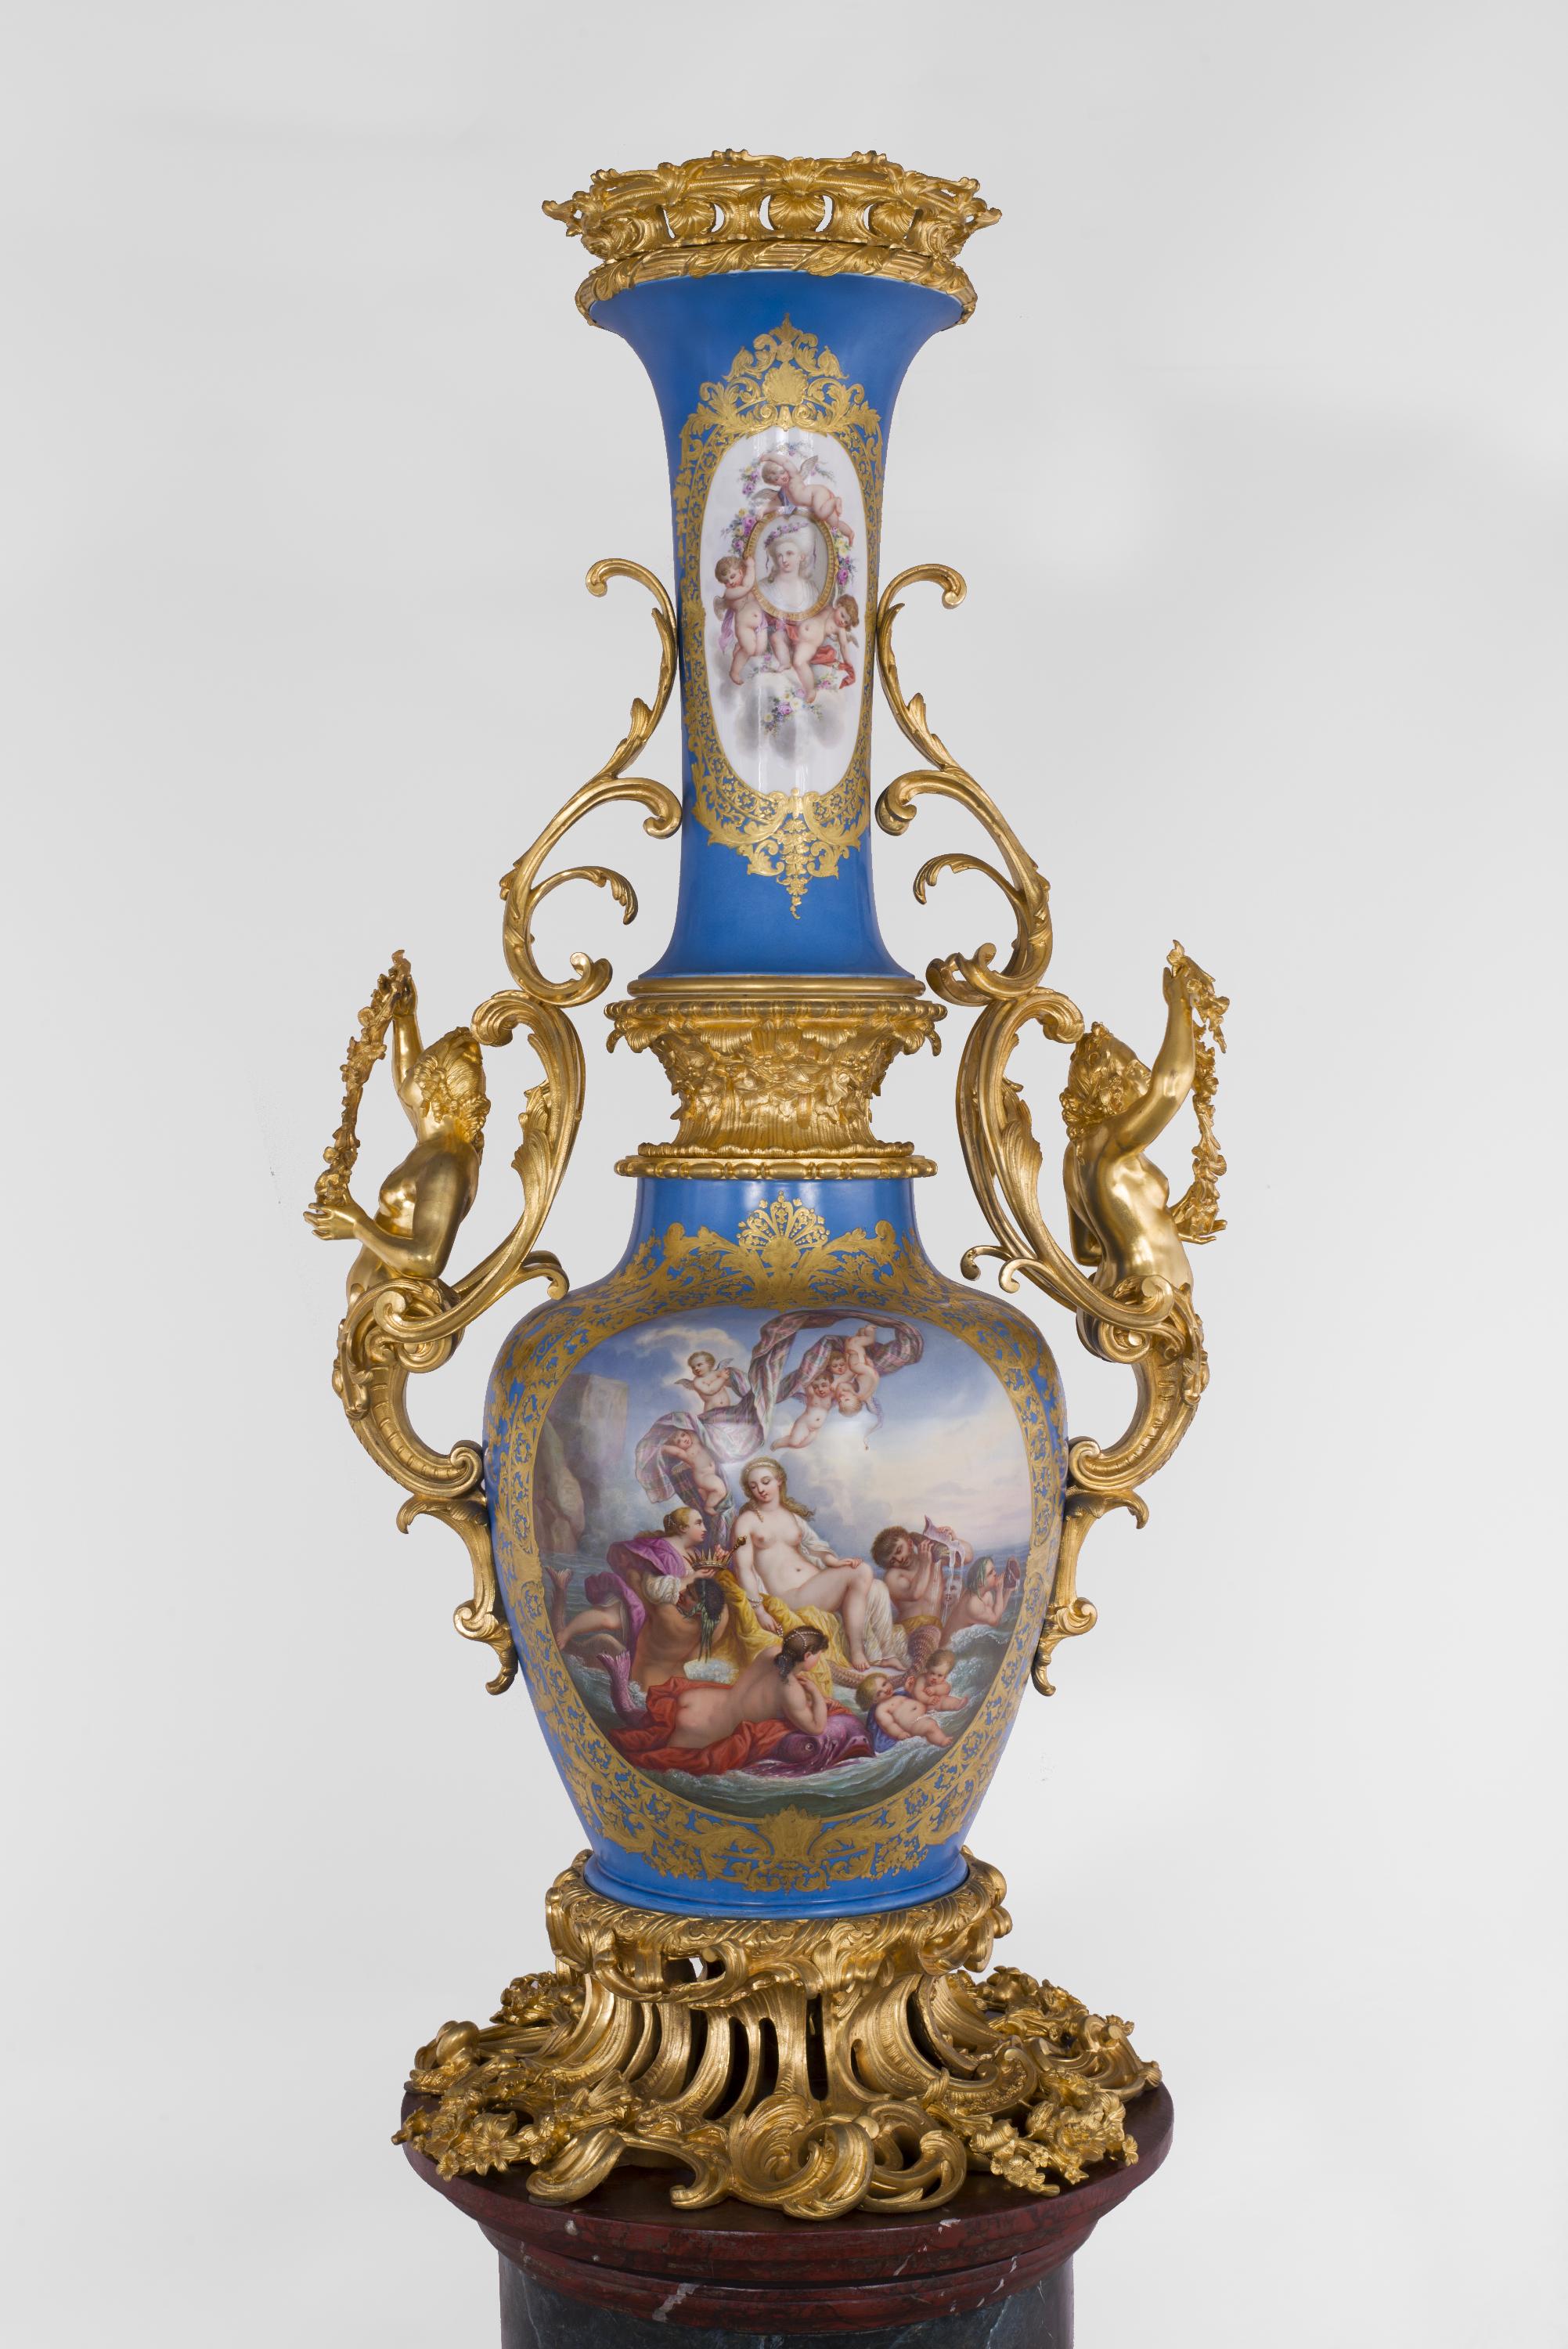 Cet exceptionnel vase monumental en porcelaine de Paris, conçu dans l'esprit des productions de la Manufacture de Sèvres, est tout à fait caractéristique du style Napoléon III . Le long cou de la forme est extrêmement rare, de même que la richesse